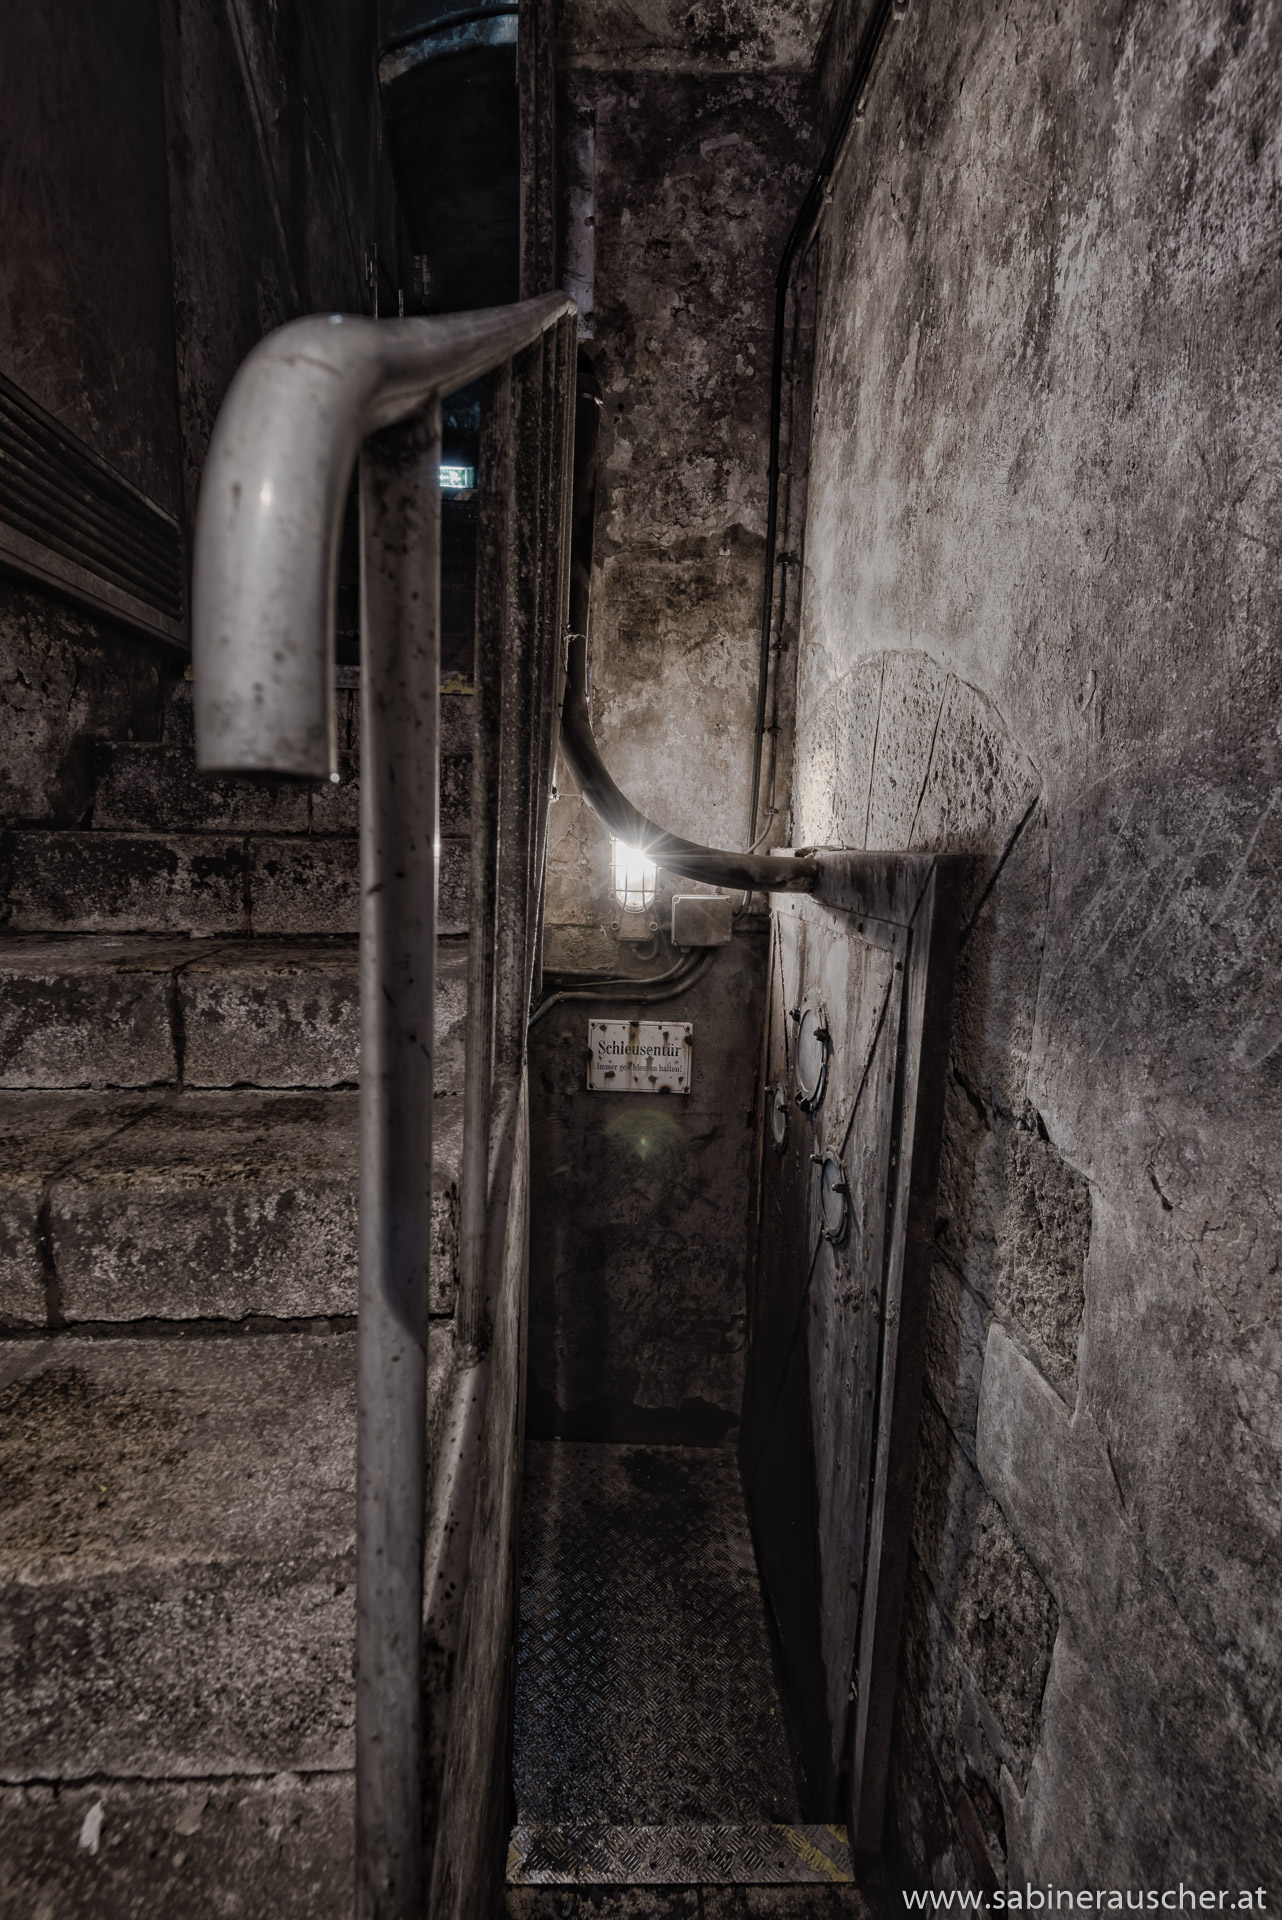 Stairwell to the lock gate | Treppe an einer Schleusentür